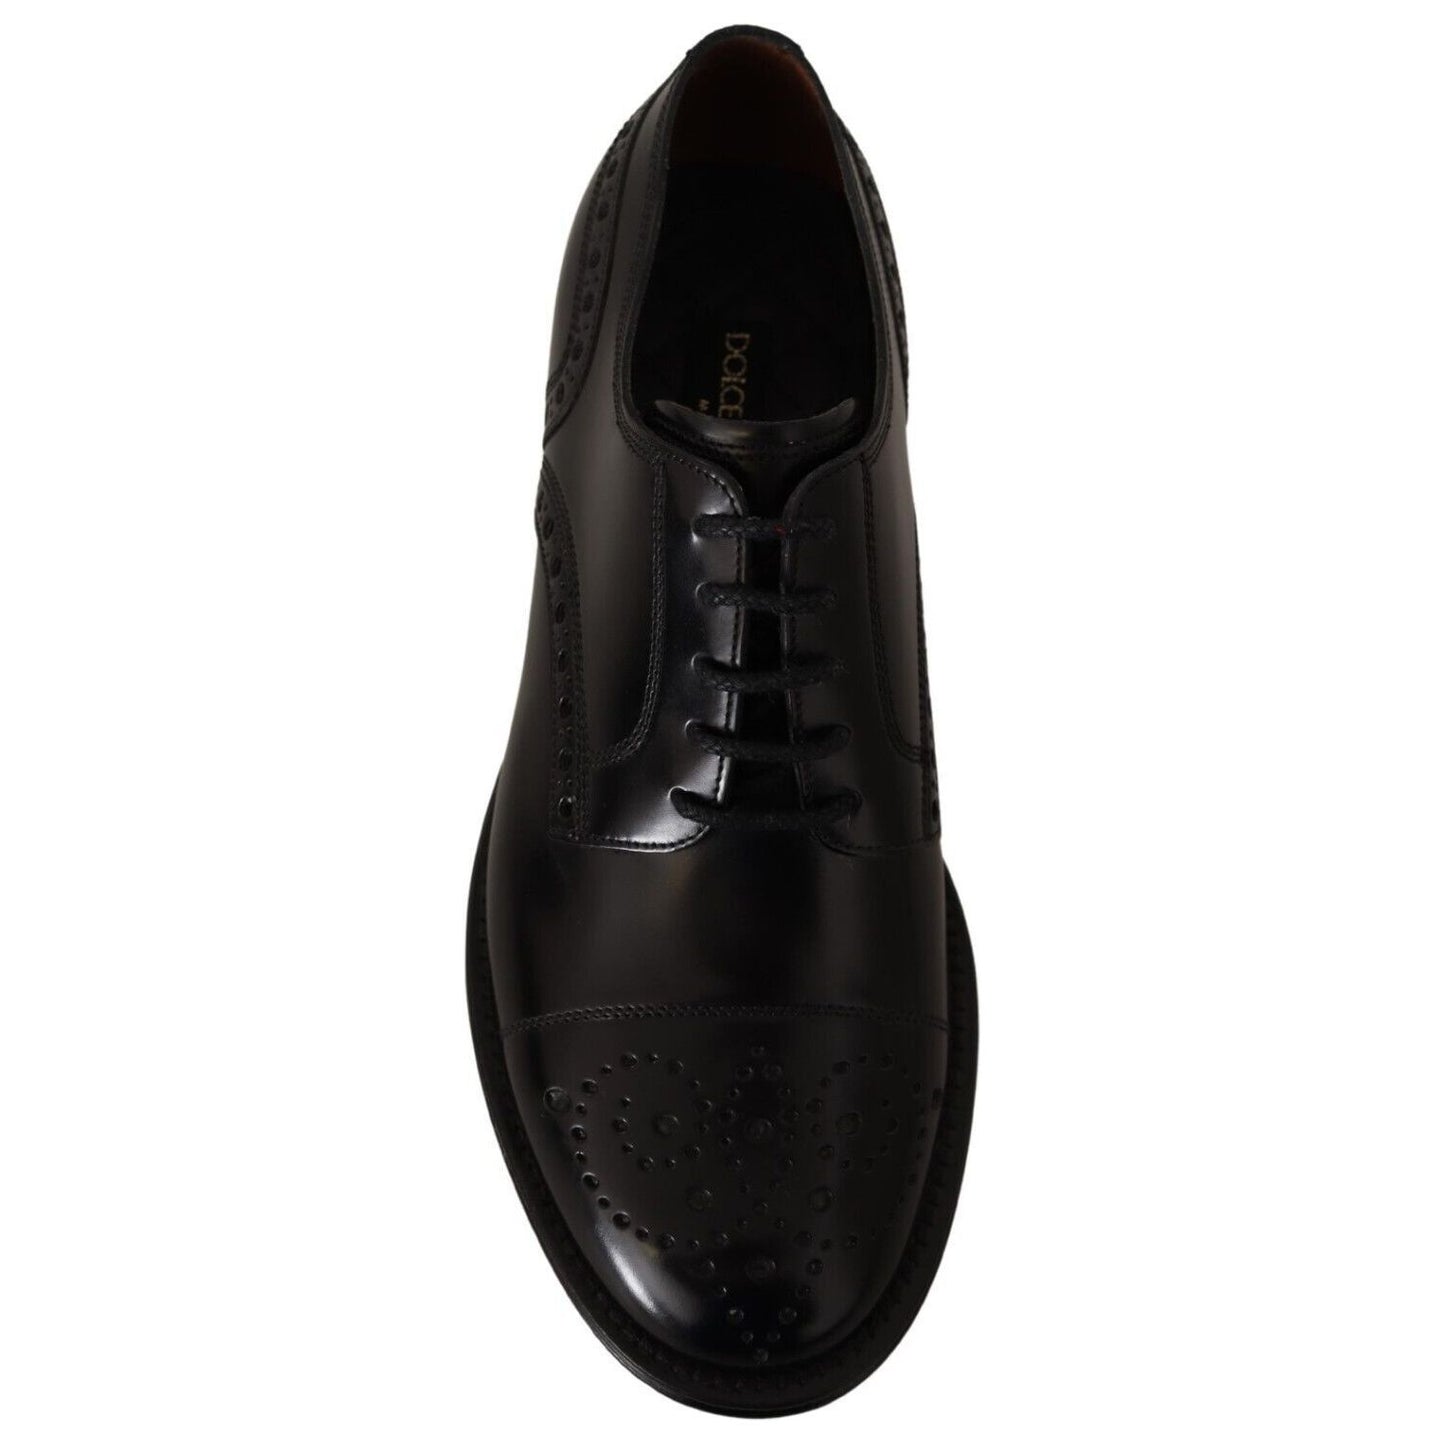 Dolce & Gabbana Elegant Wingtip Oxford Formal Shoes black-leather-wingtip-mens-formal-derby-shoes